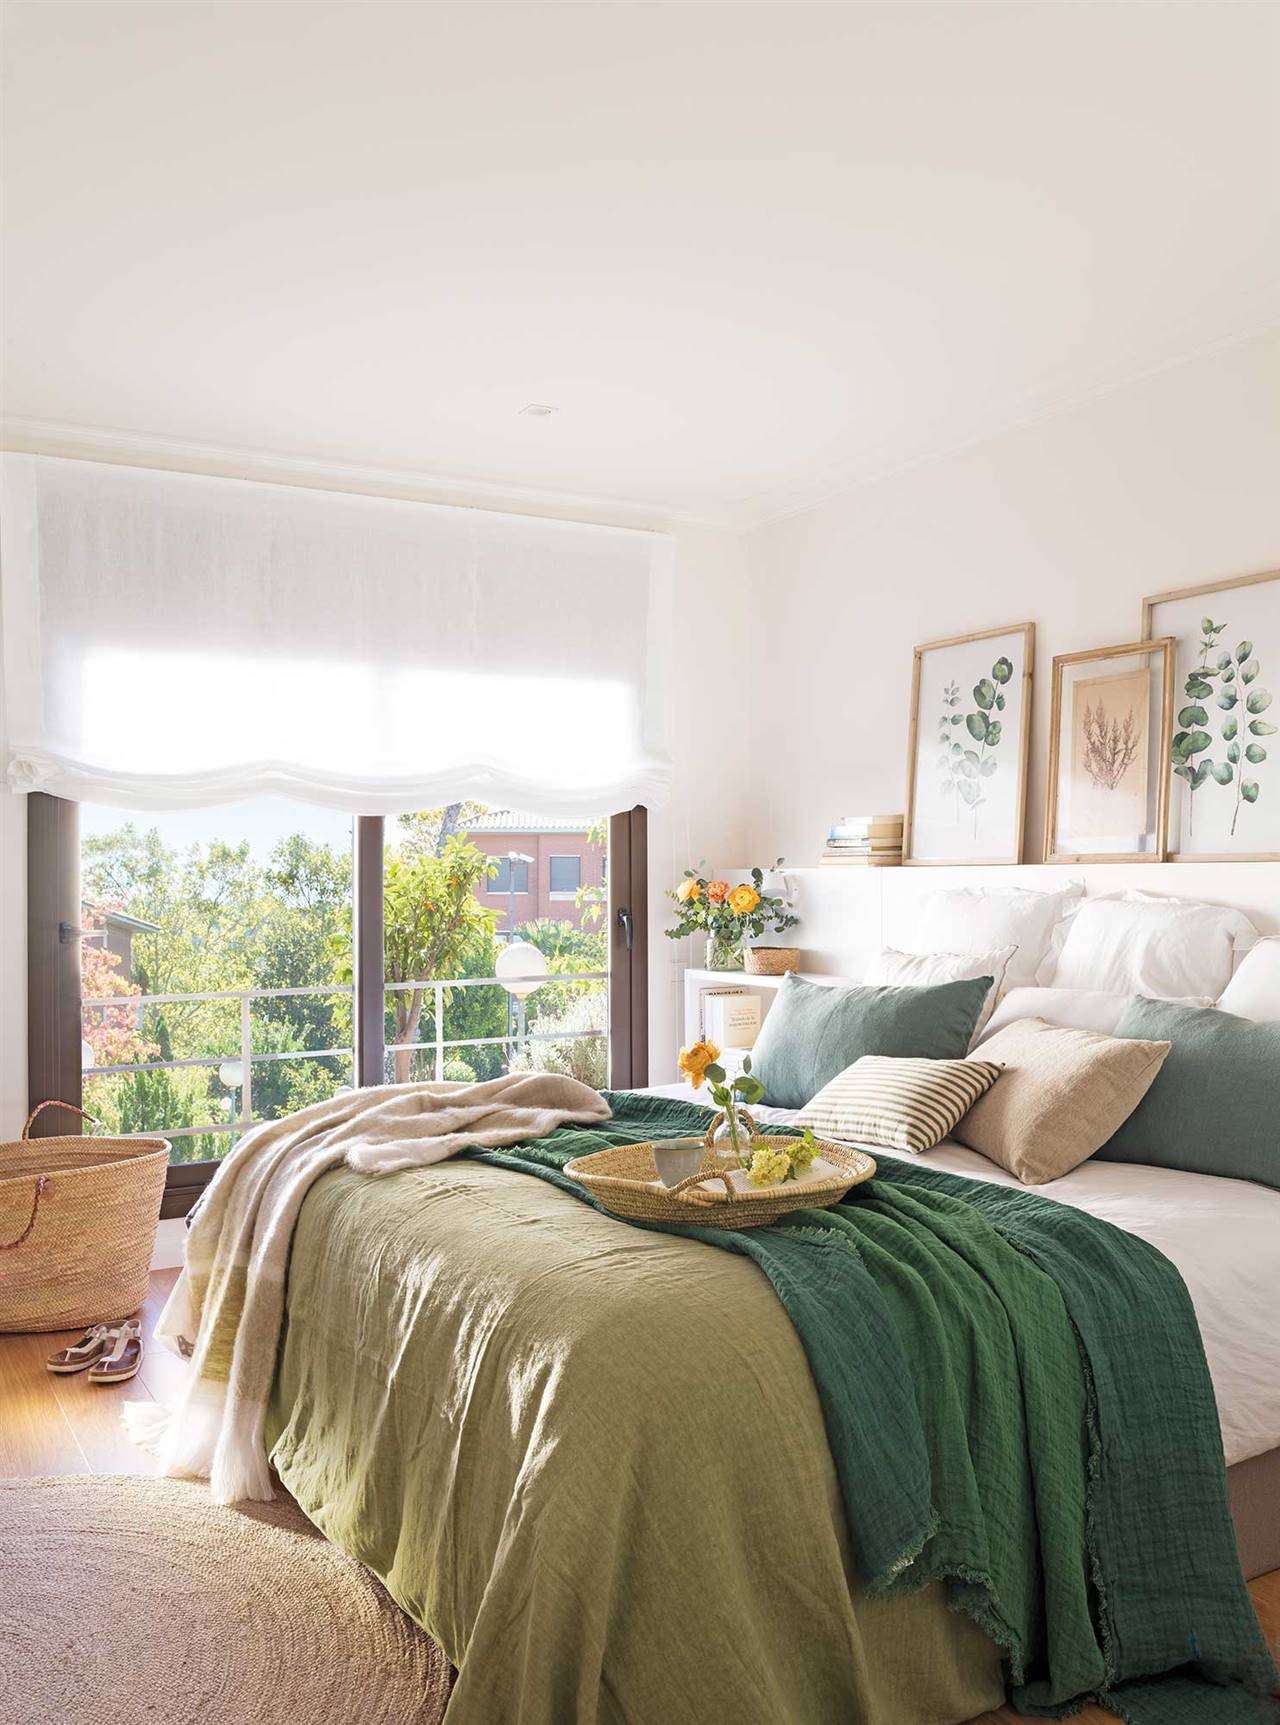 Parejas jóvenes: 10 ideas para decorar el dormitorio y darle un look 'cozy'